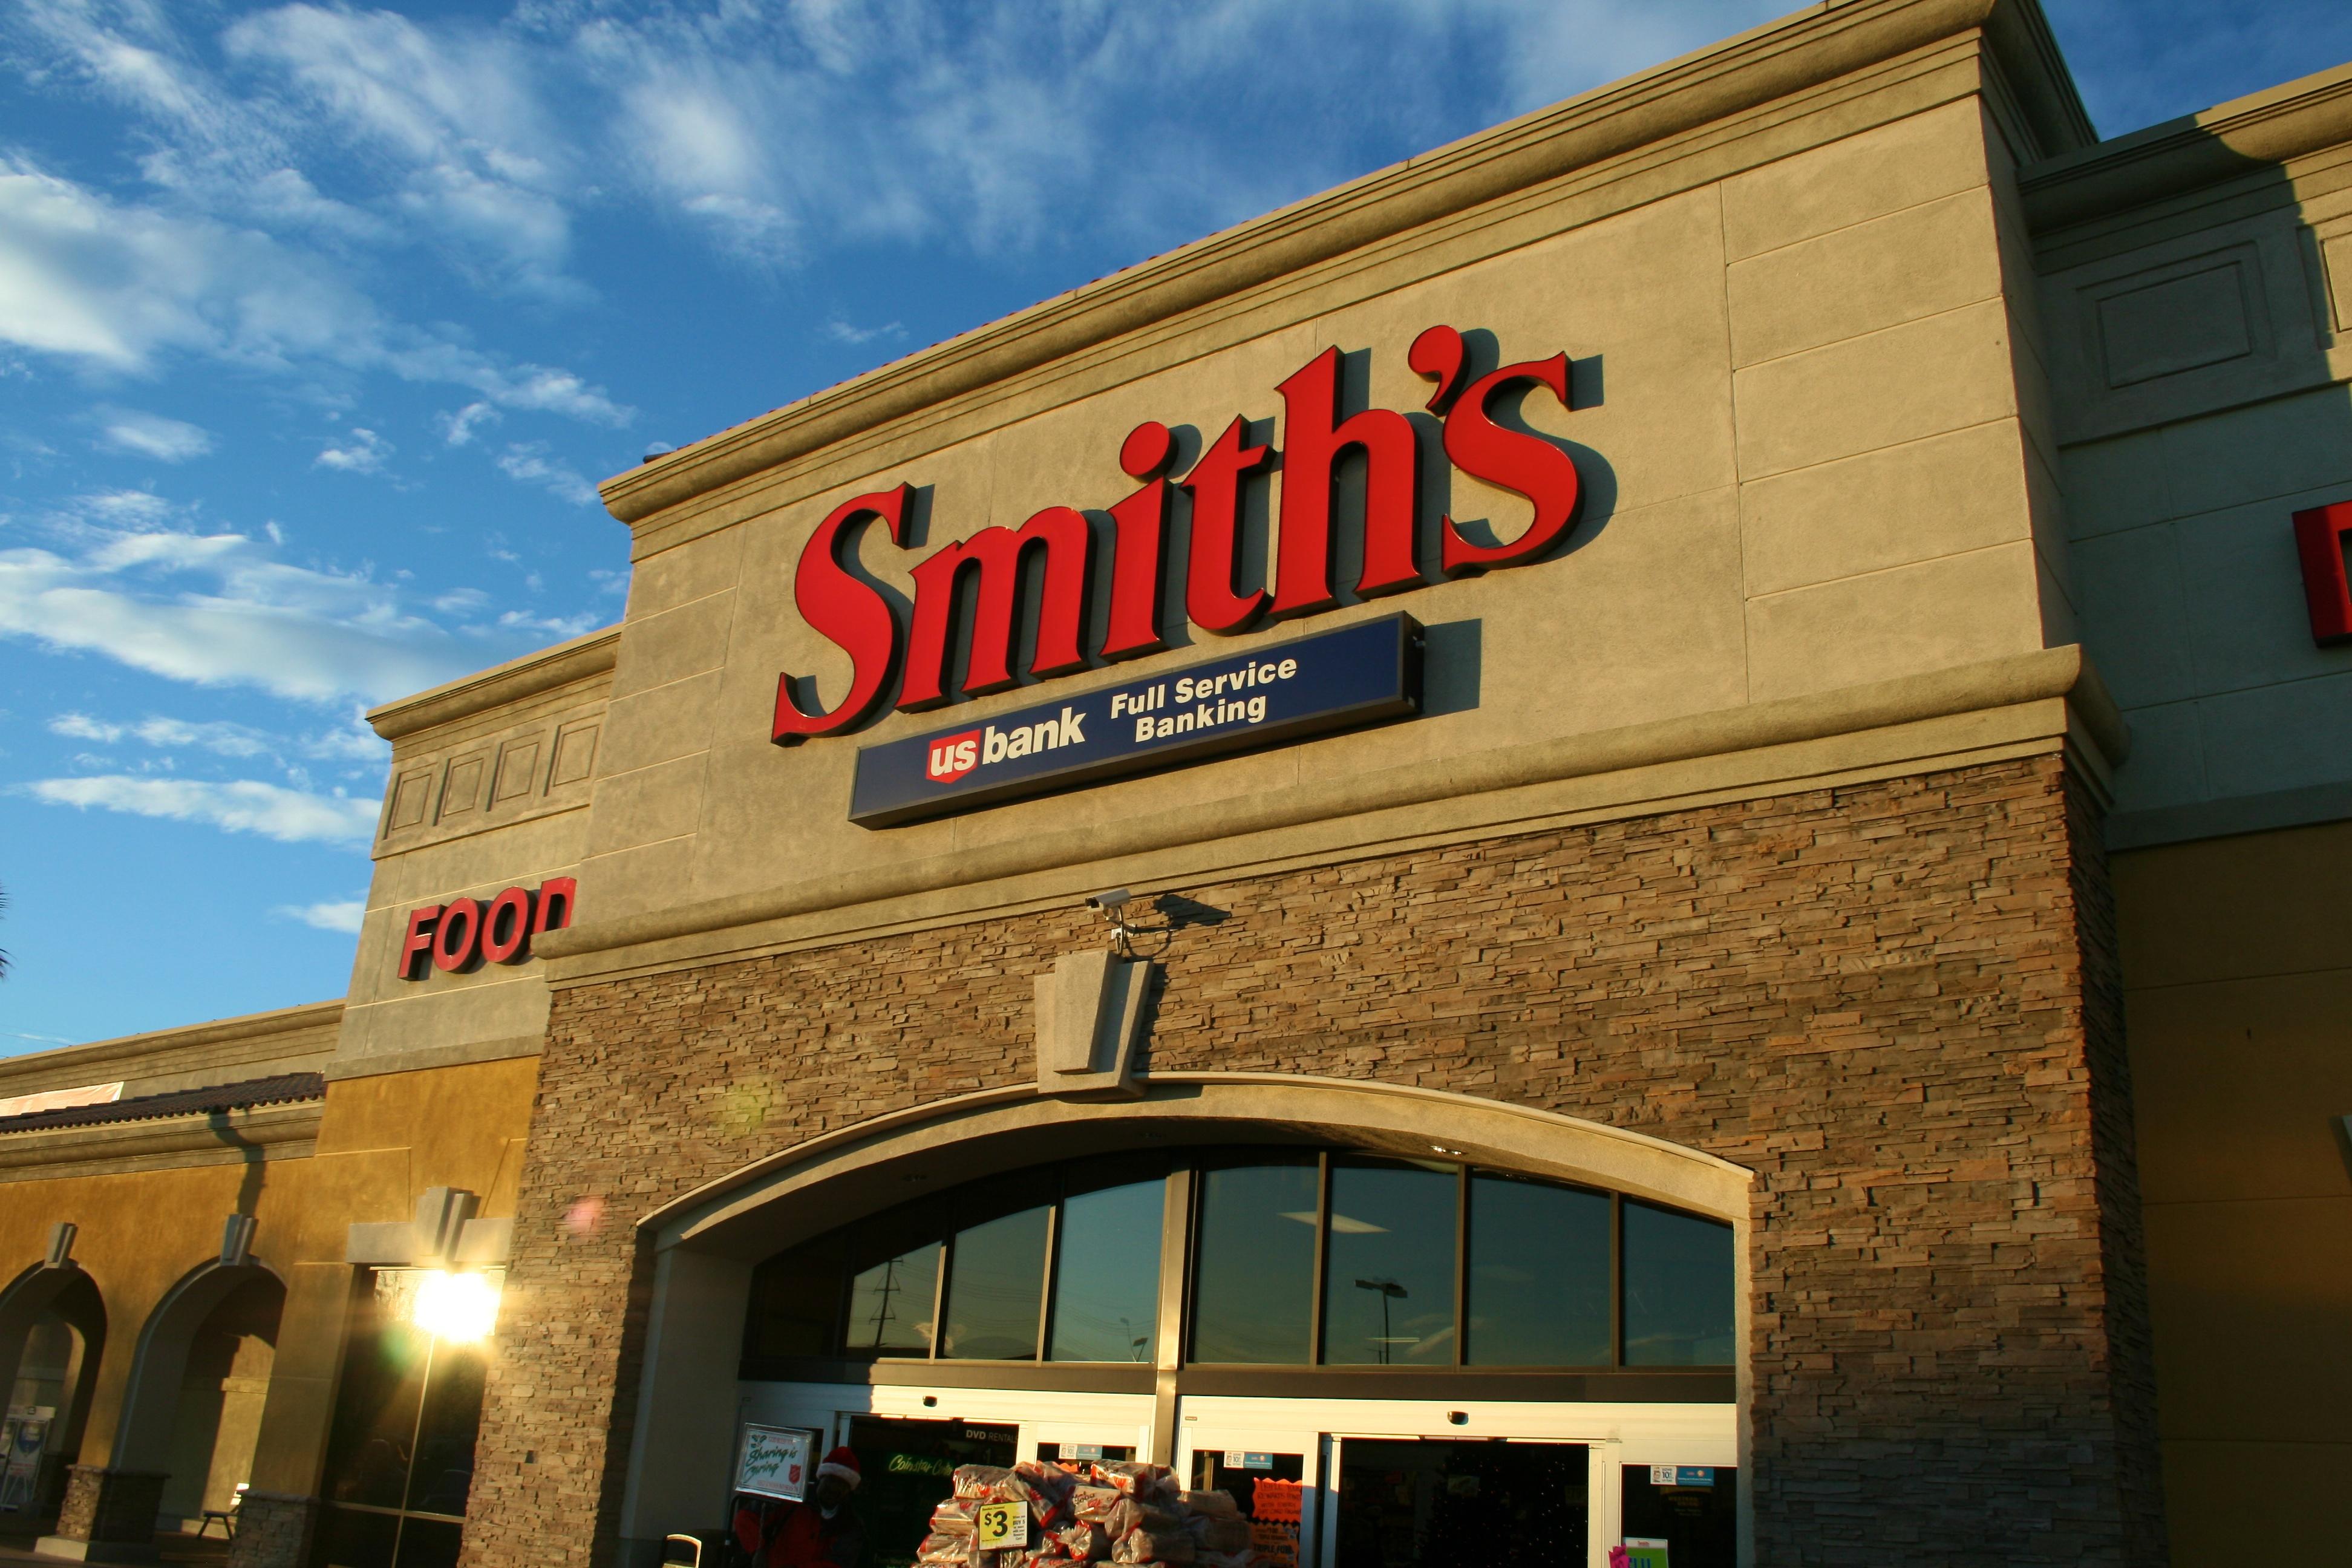 Smith's Santa Fe (505)471-9024